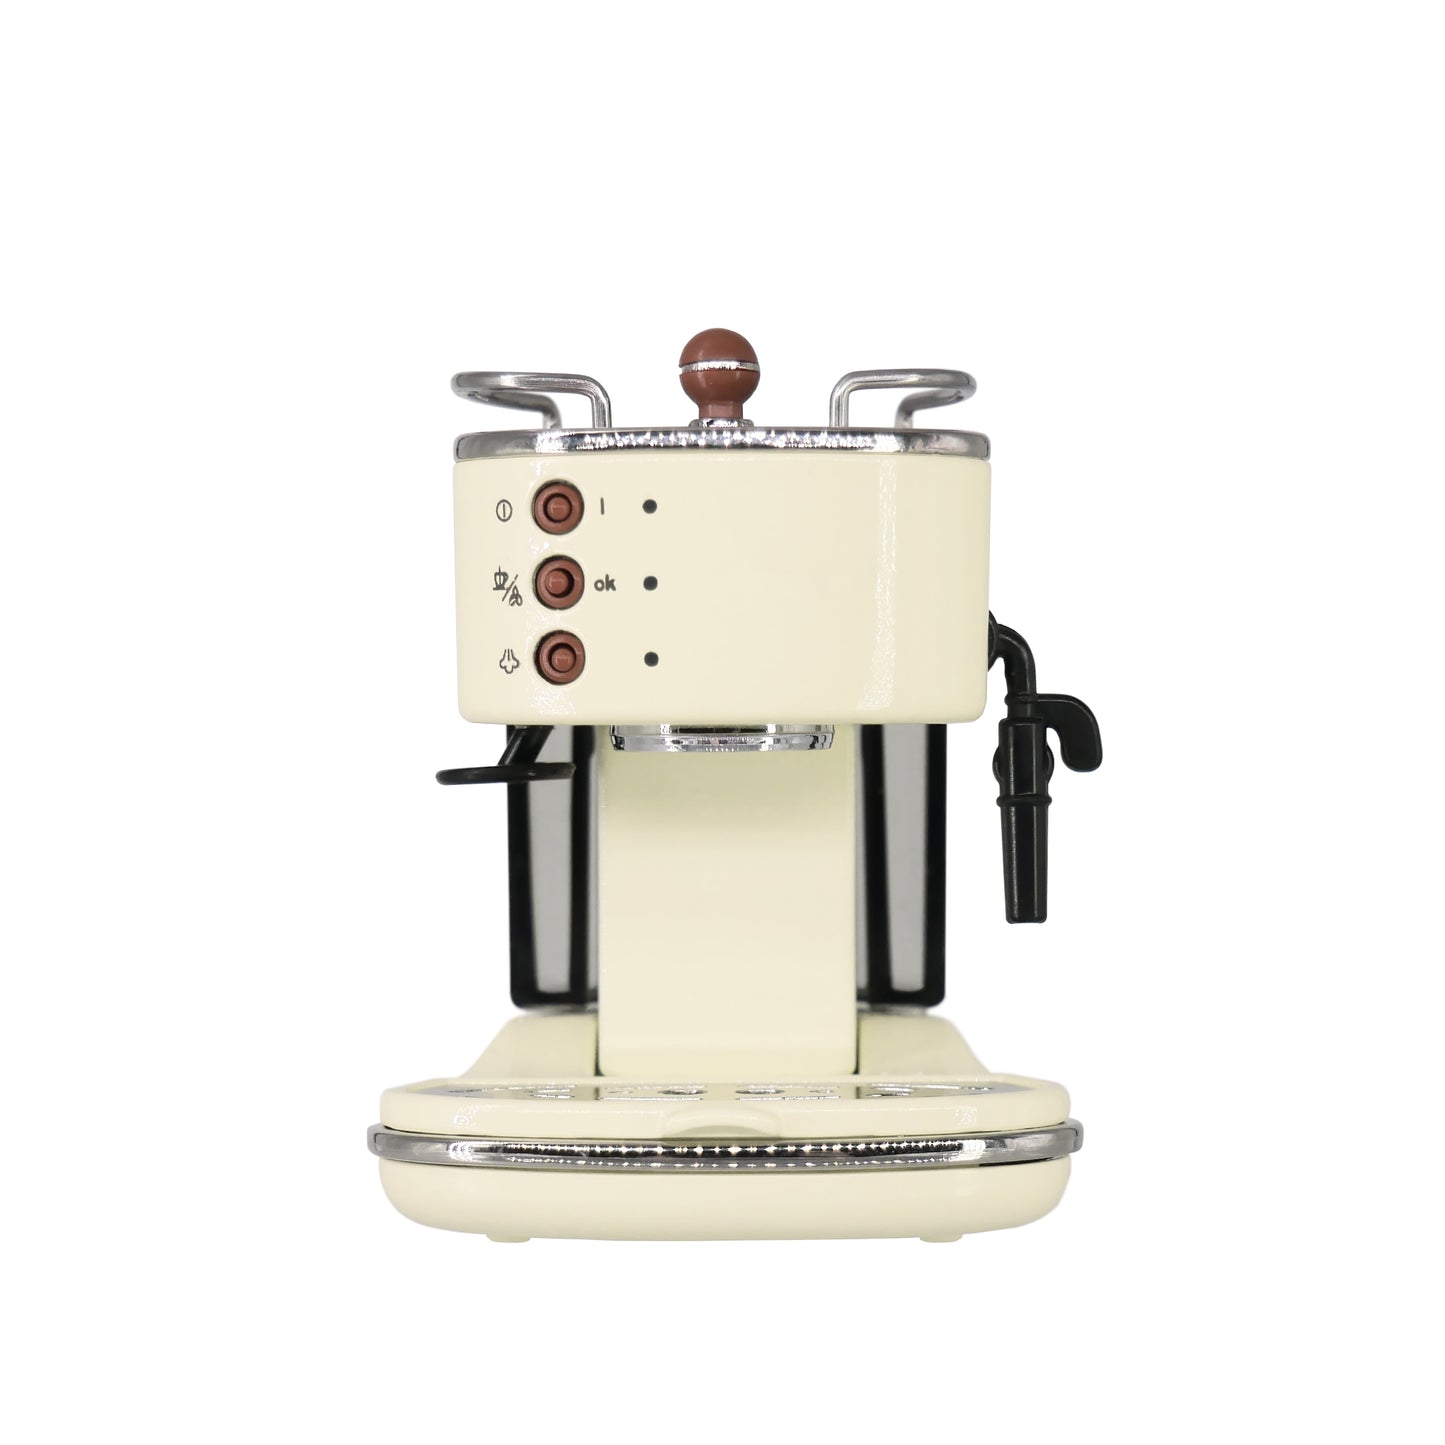 1/6 Scale Glossy Retro Espresso - Coffee Machine Dollhouse Kitchen Accessory